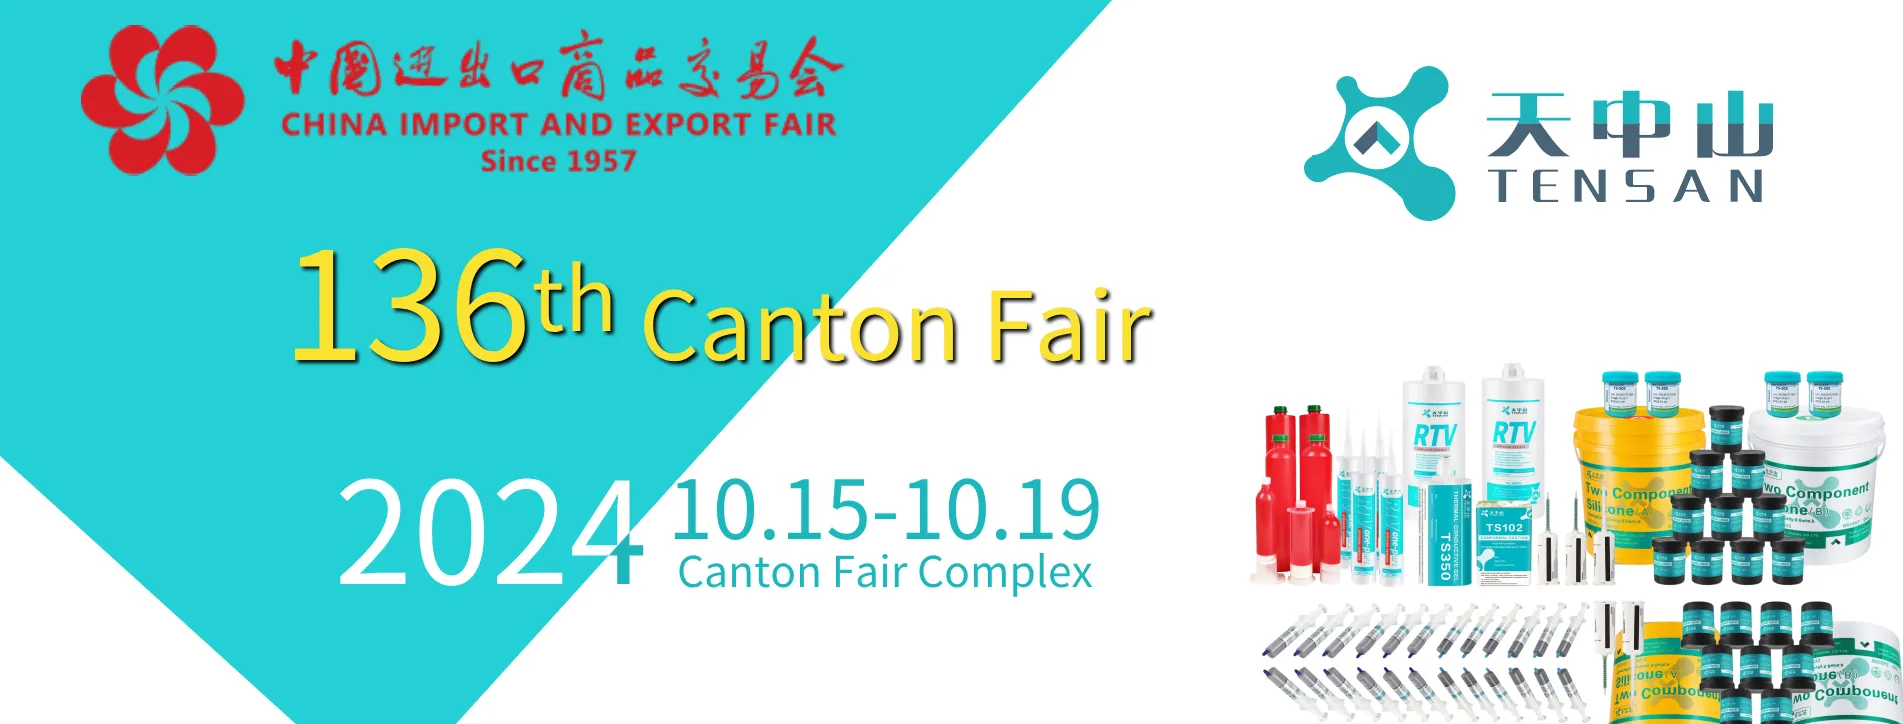 136th Canton fair